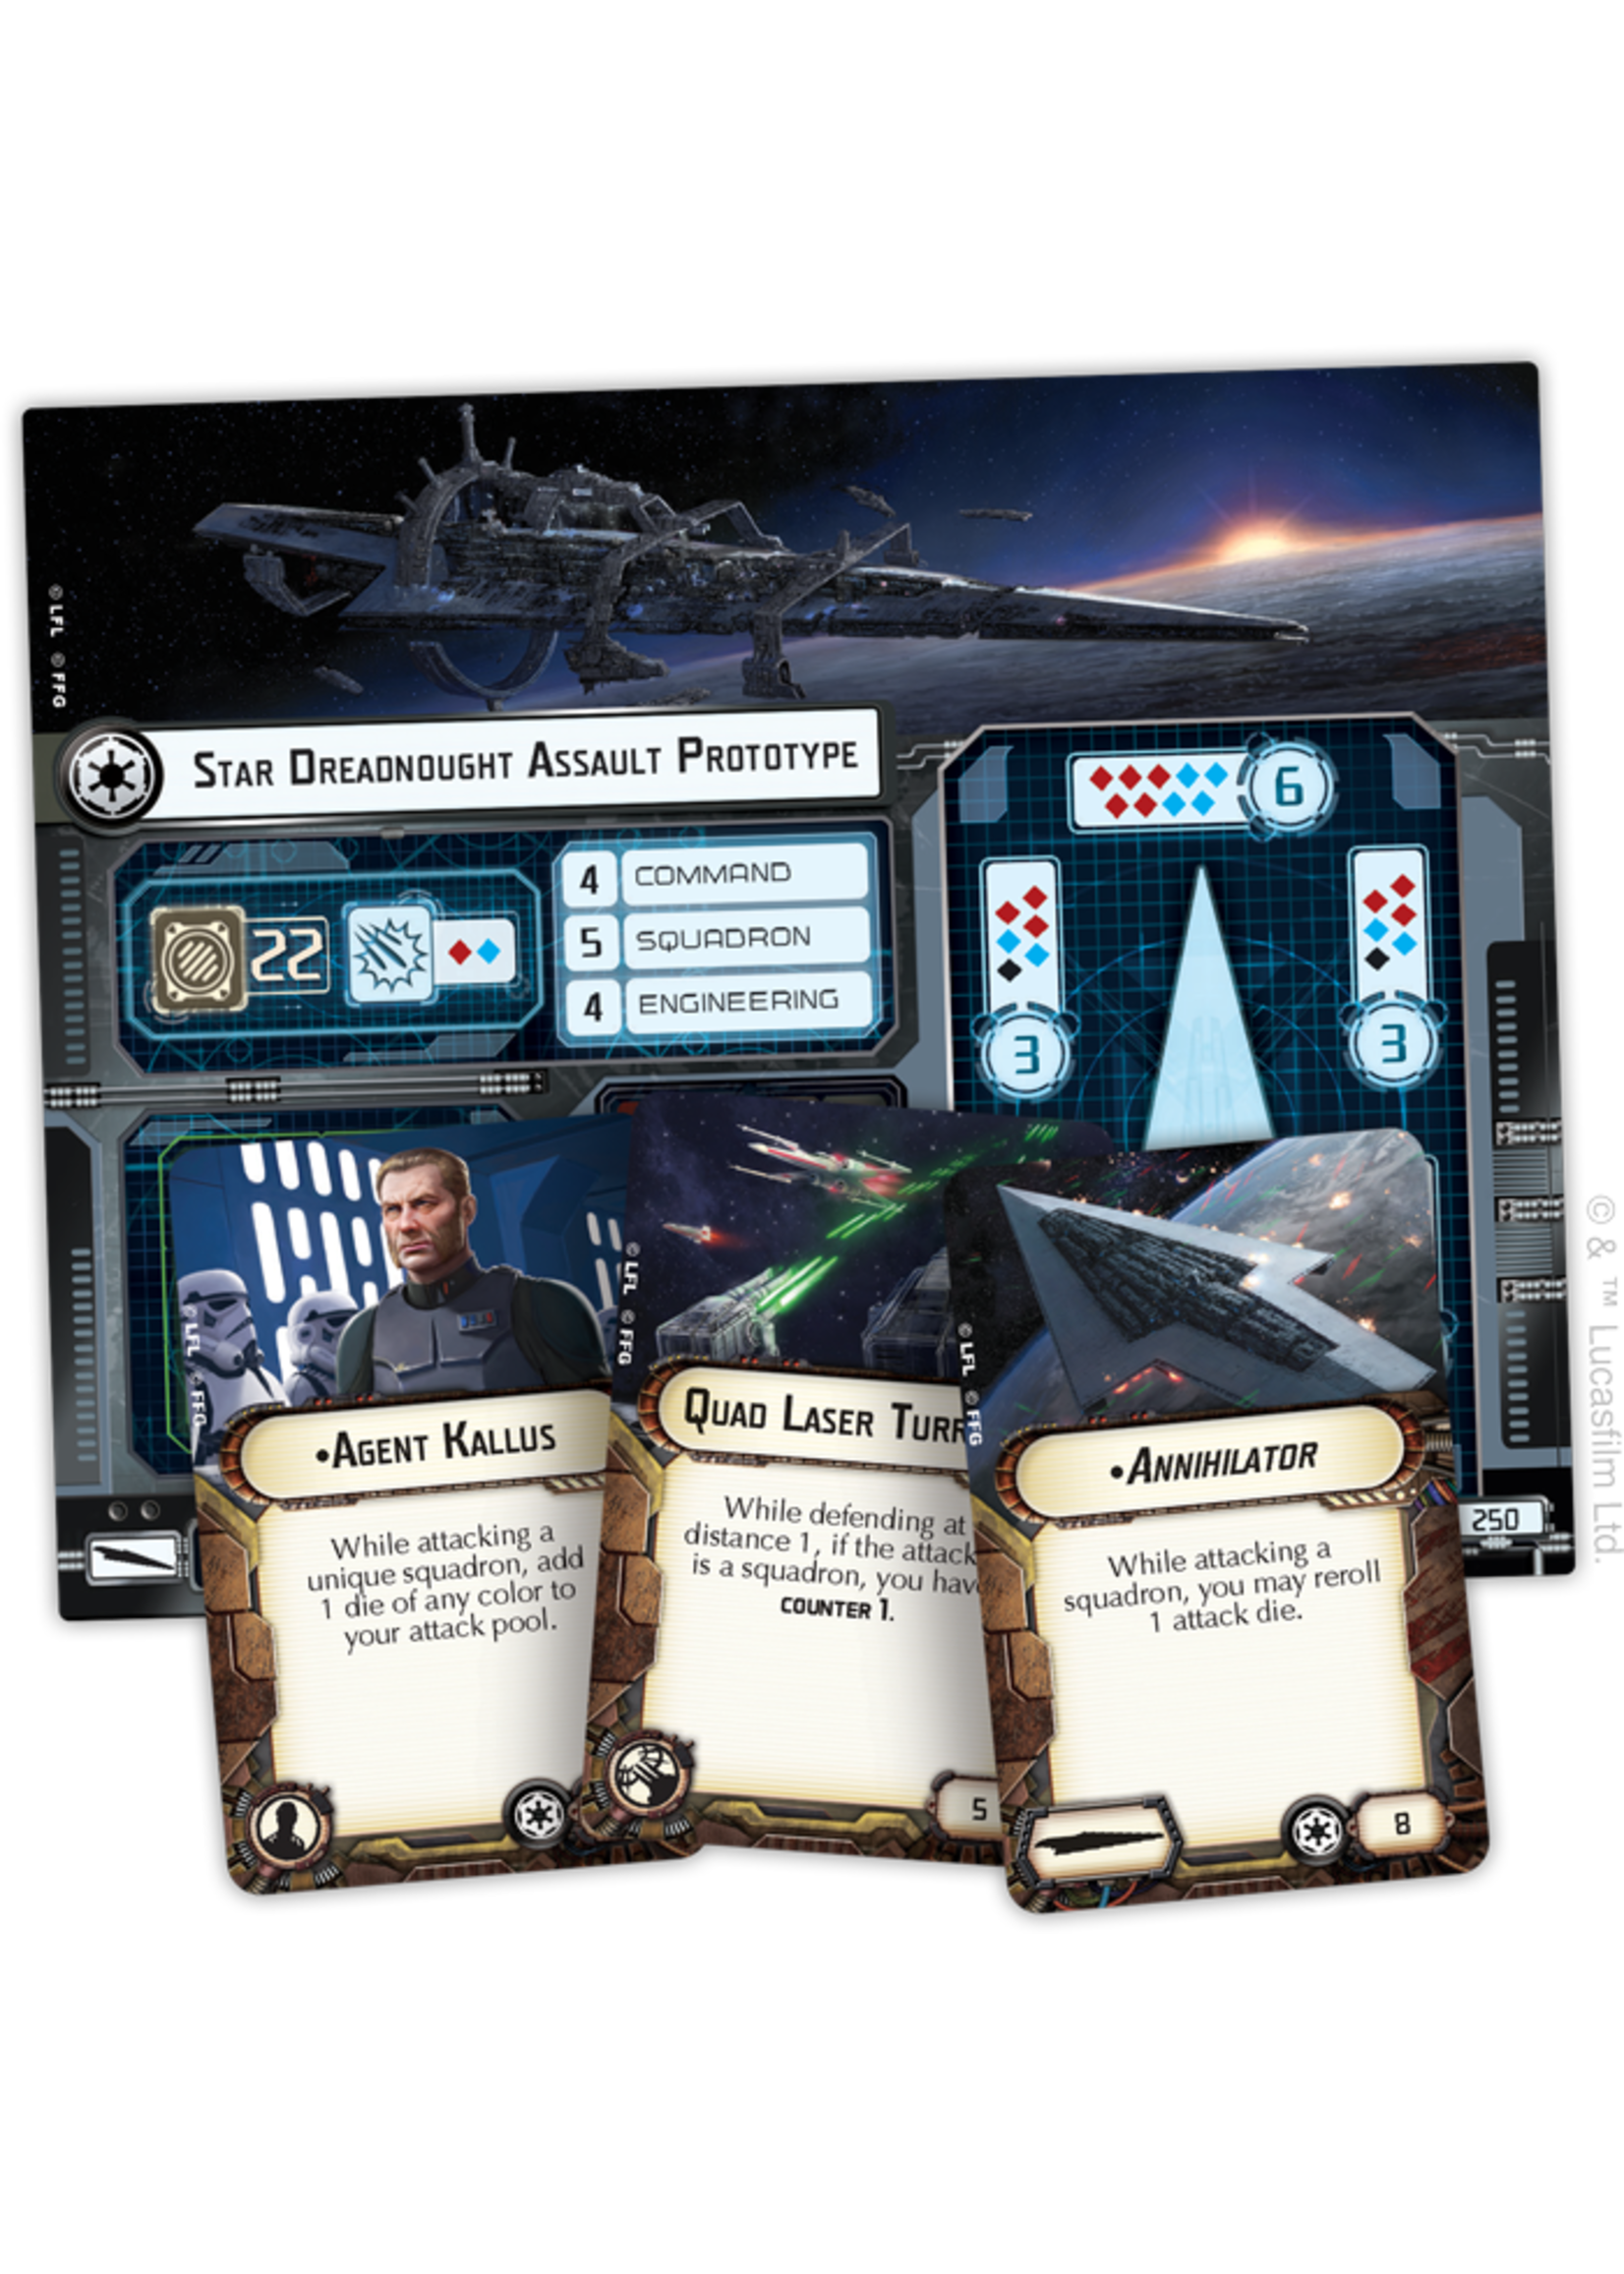 Star Wars Armada Super Star Destroyer Expansion Pack